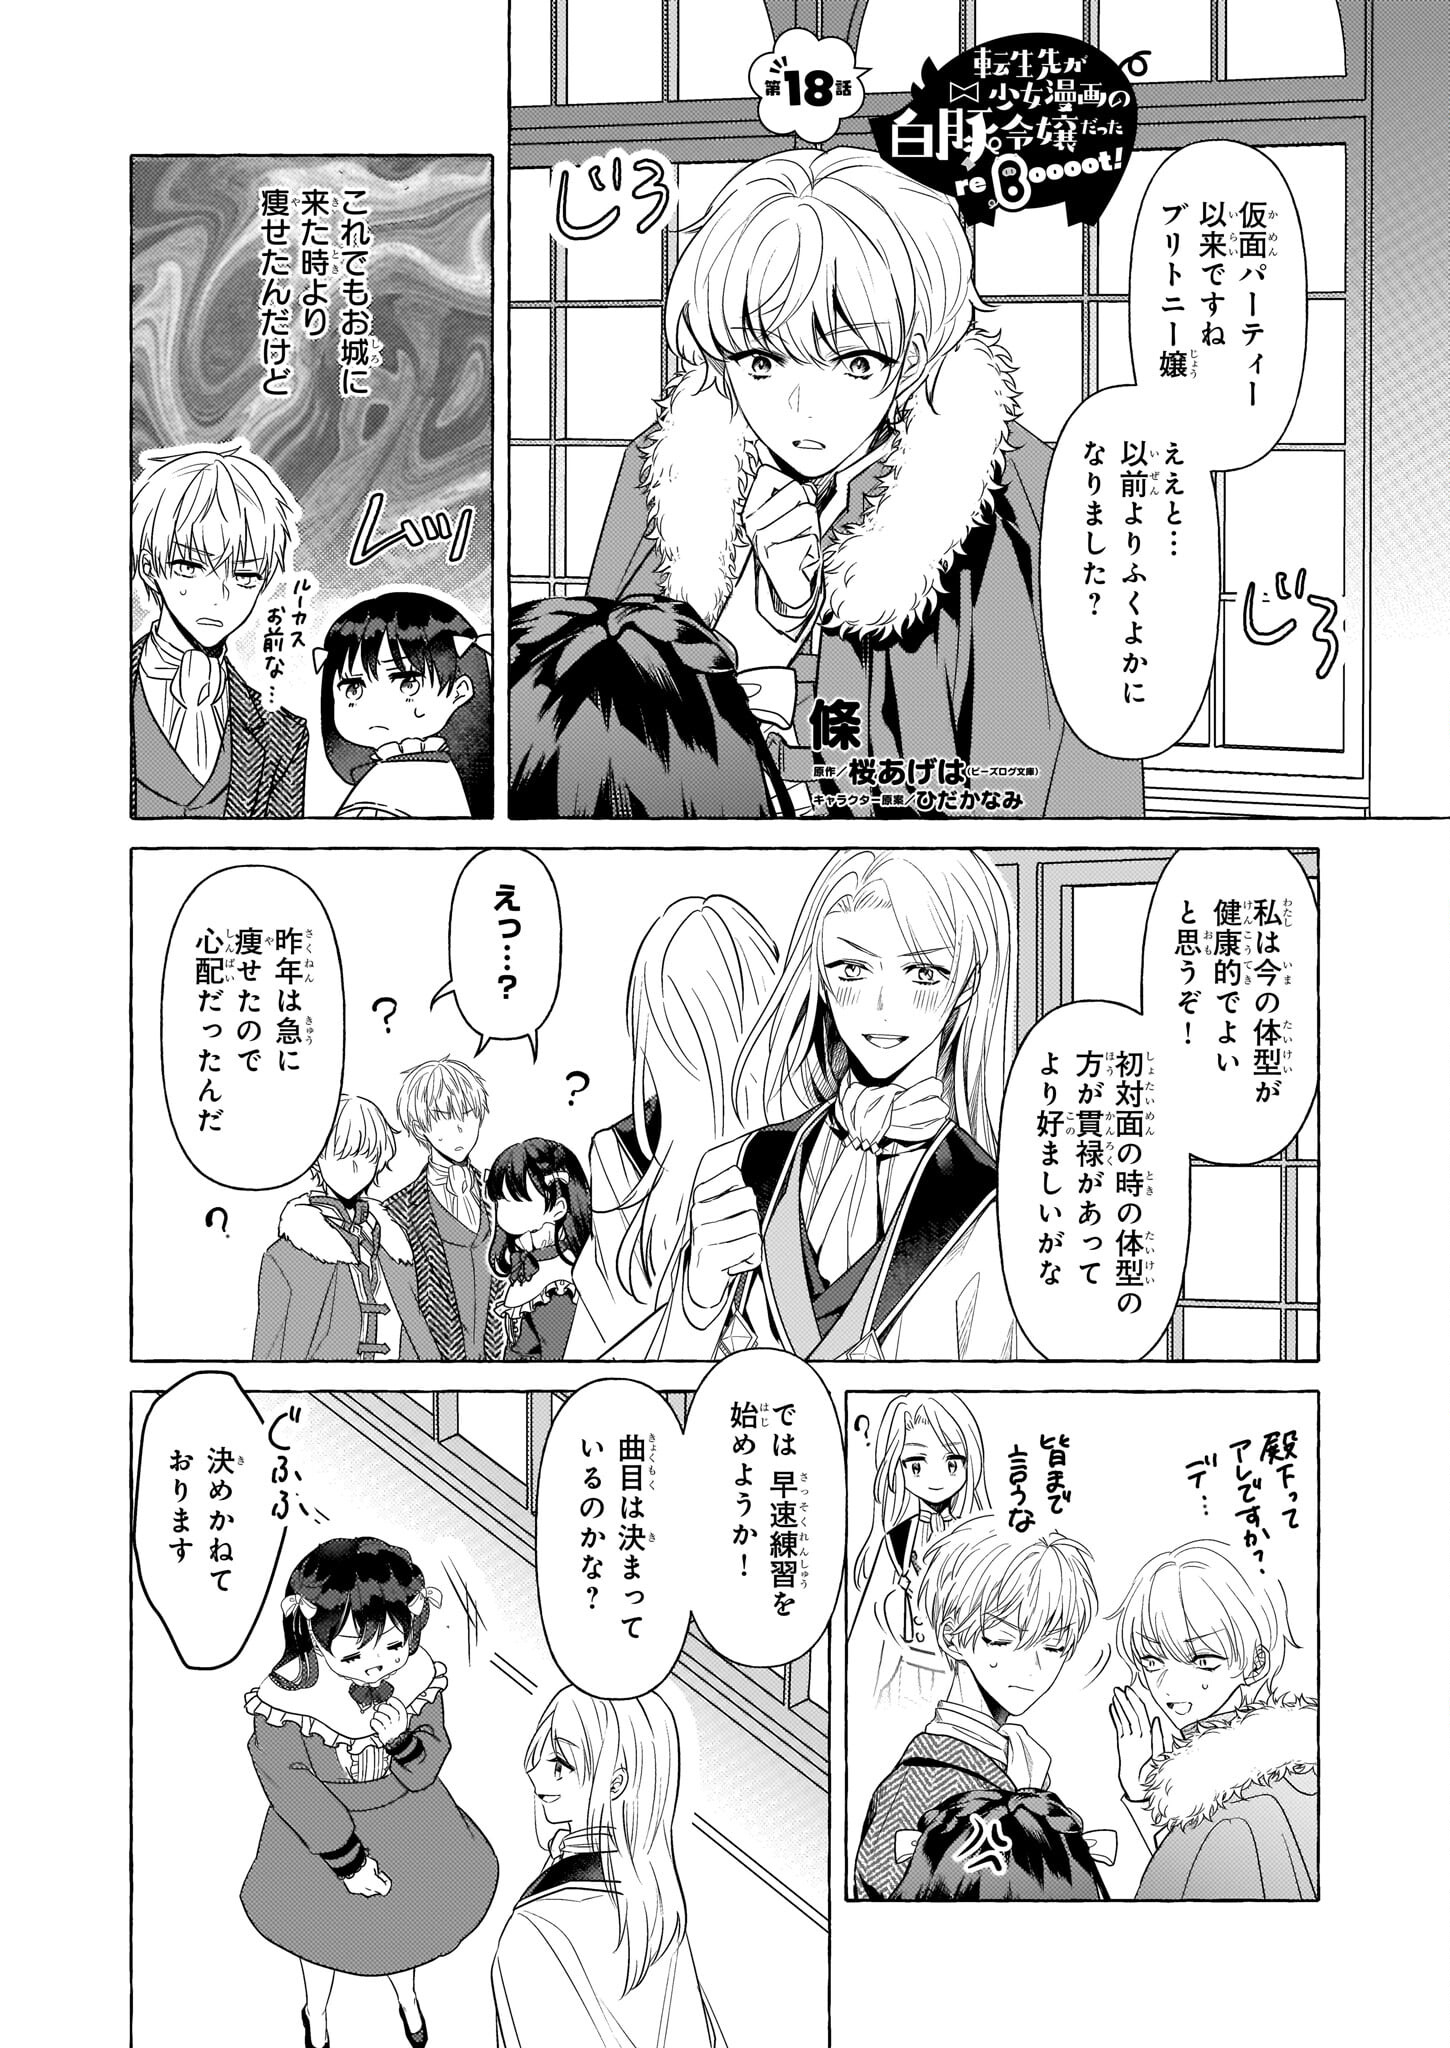 Tenseisaki ga Shoujo Manga no Shirobuta Reijou datta reBoooot! - Chapter 18 - Page 1